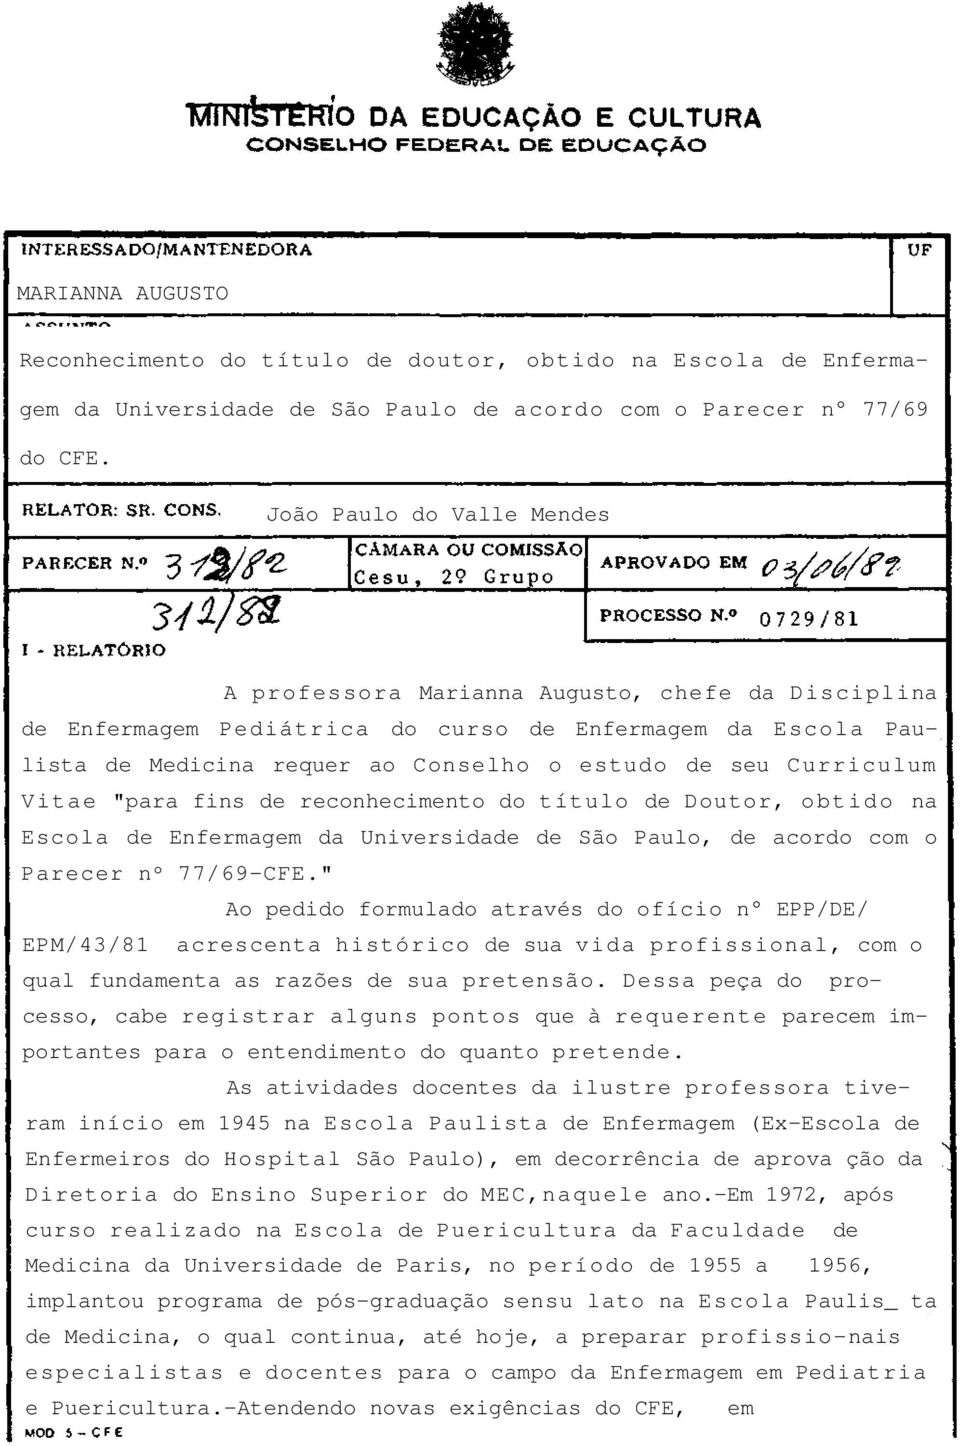 Curriculum Vitae "para fins de reconhecimento do título de Doutor, obtido na Escola de Enfermagem da Universidade de São Paulo, de acordo com o Parecer nº 77/69-CFE.